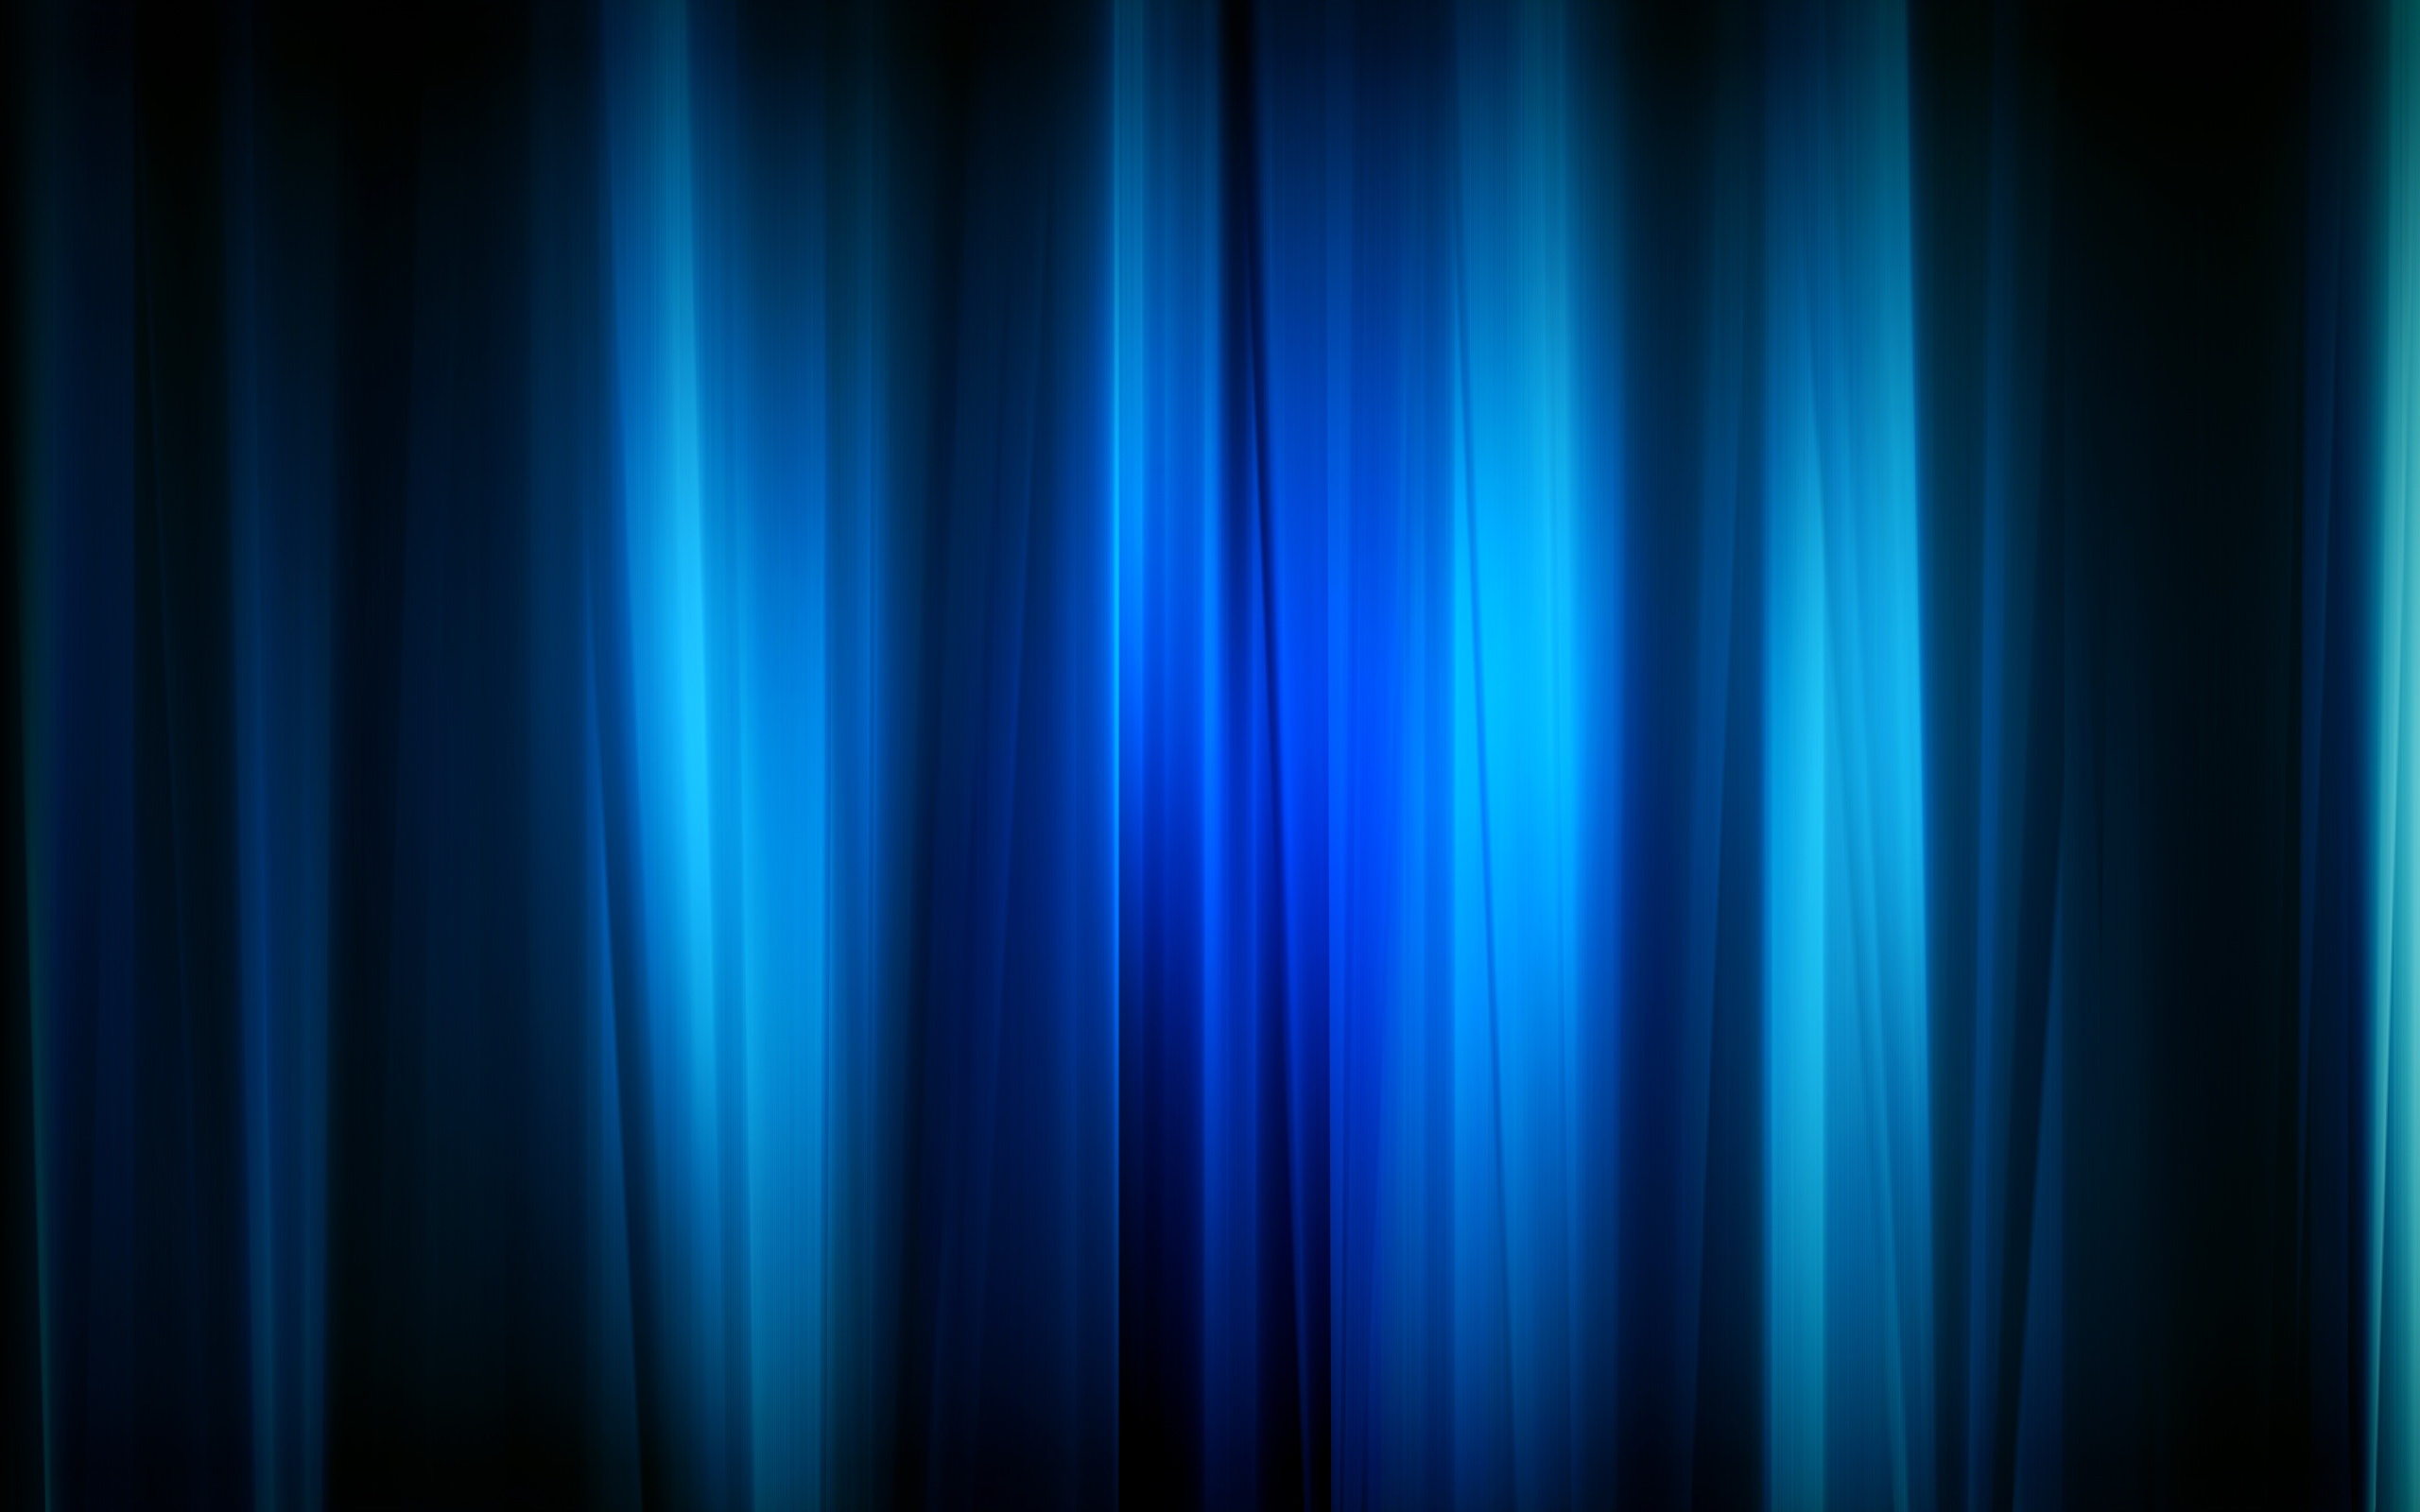 tapete azul marinho,blau,schwarz,elektrisches blau,licht,kobaltblau